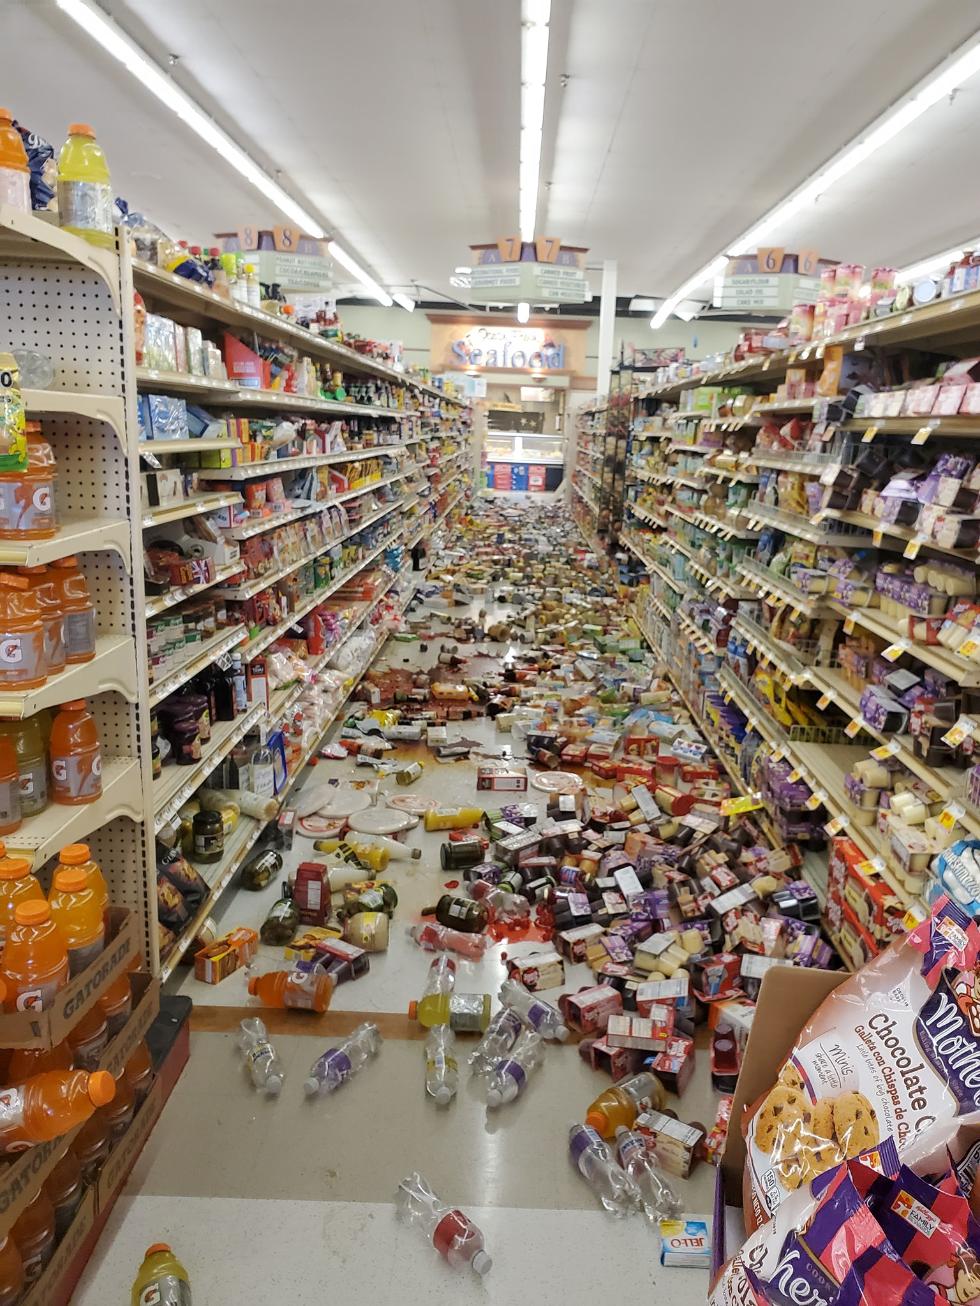 加州6.4级地震引发次余震:路面断裂 超市饮料全洒出